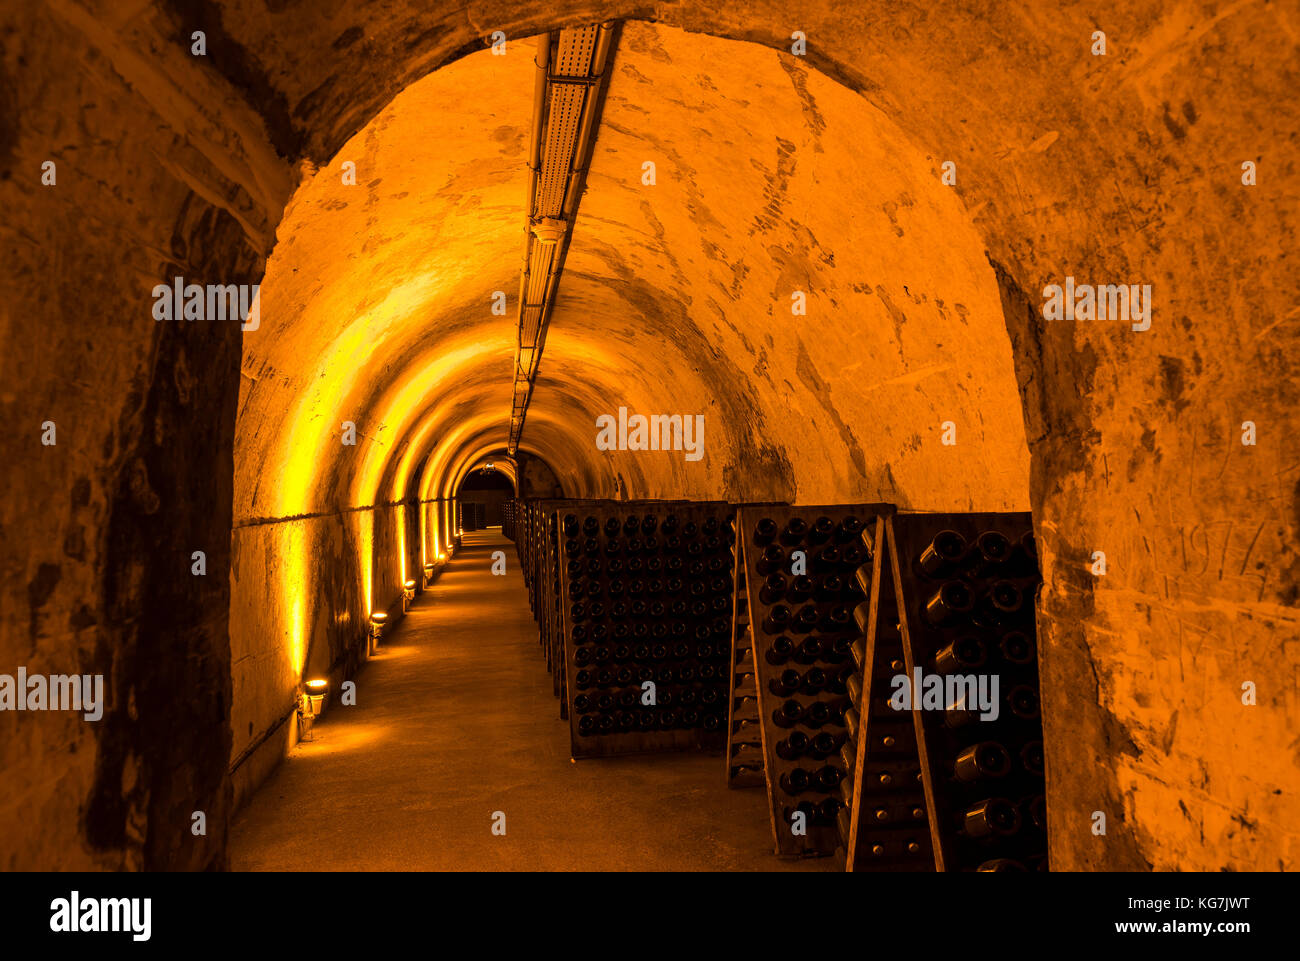 Reims, France - 14 juin 2017 : les caves de champagne Mumm maison avec de vieux pupitres dans un long couloir sombre, France. Banque D'Images